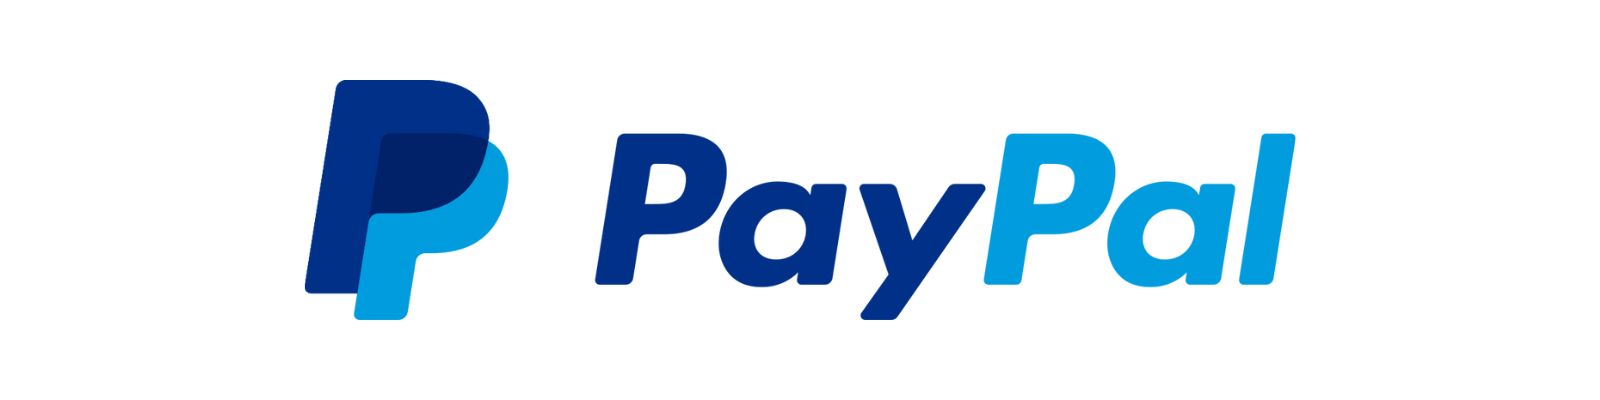 PayPal é confiável? Descubra a Verdade Agora Mesmo!